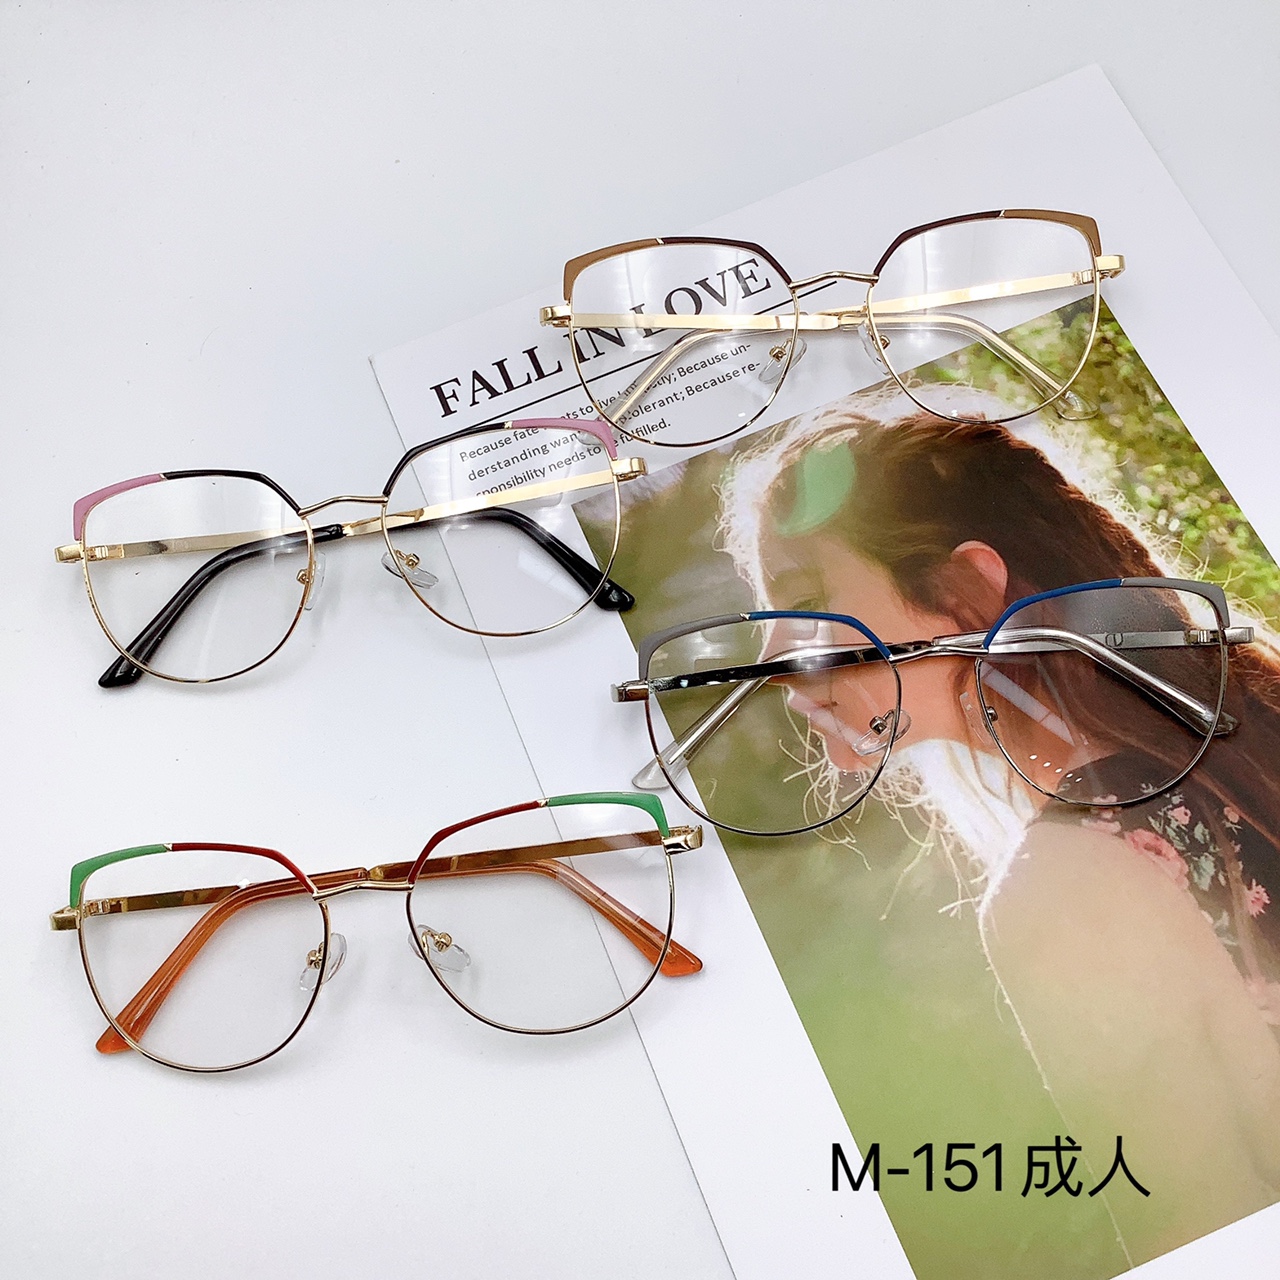 新品成人光学镜 圆框可配度数眼镜 M-151详情图1